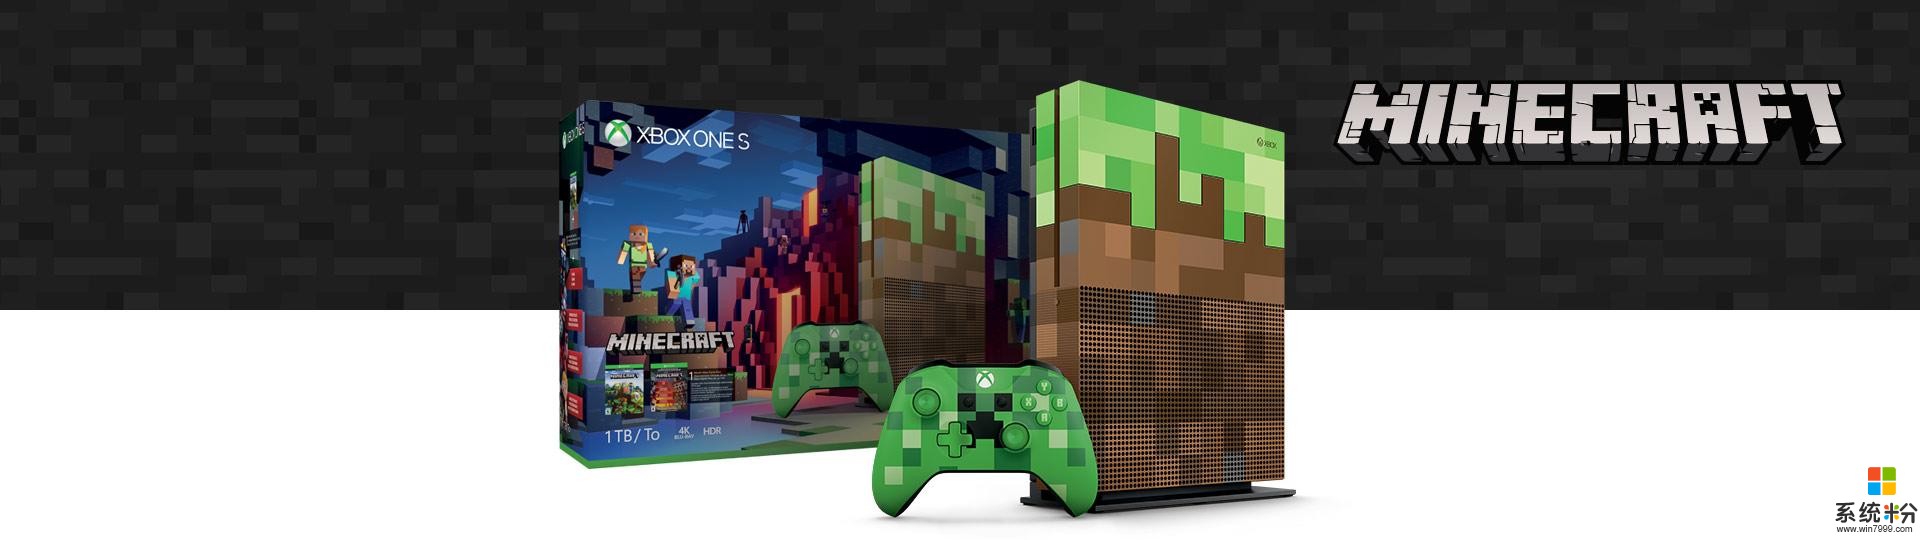 微软将推《我的世界》特别版Xbox One S主机(1)